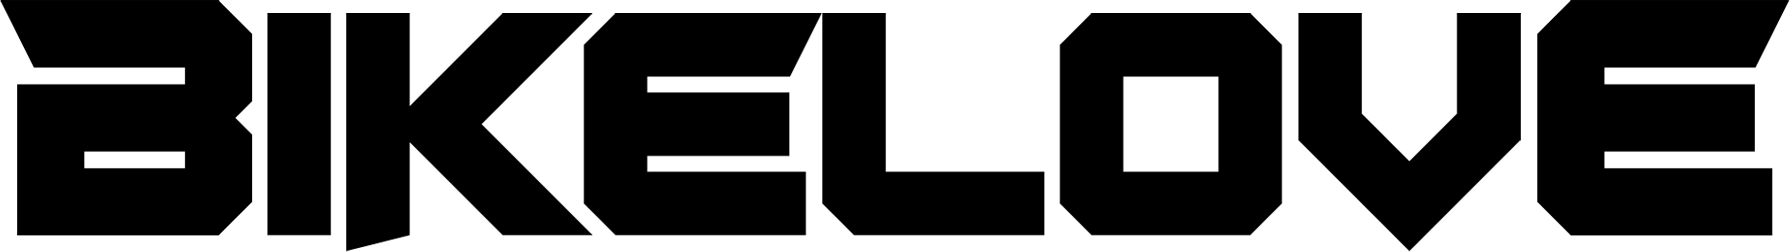 bikelove-logo-t-b